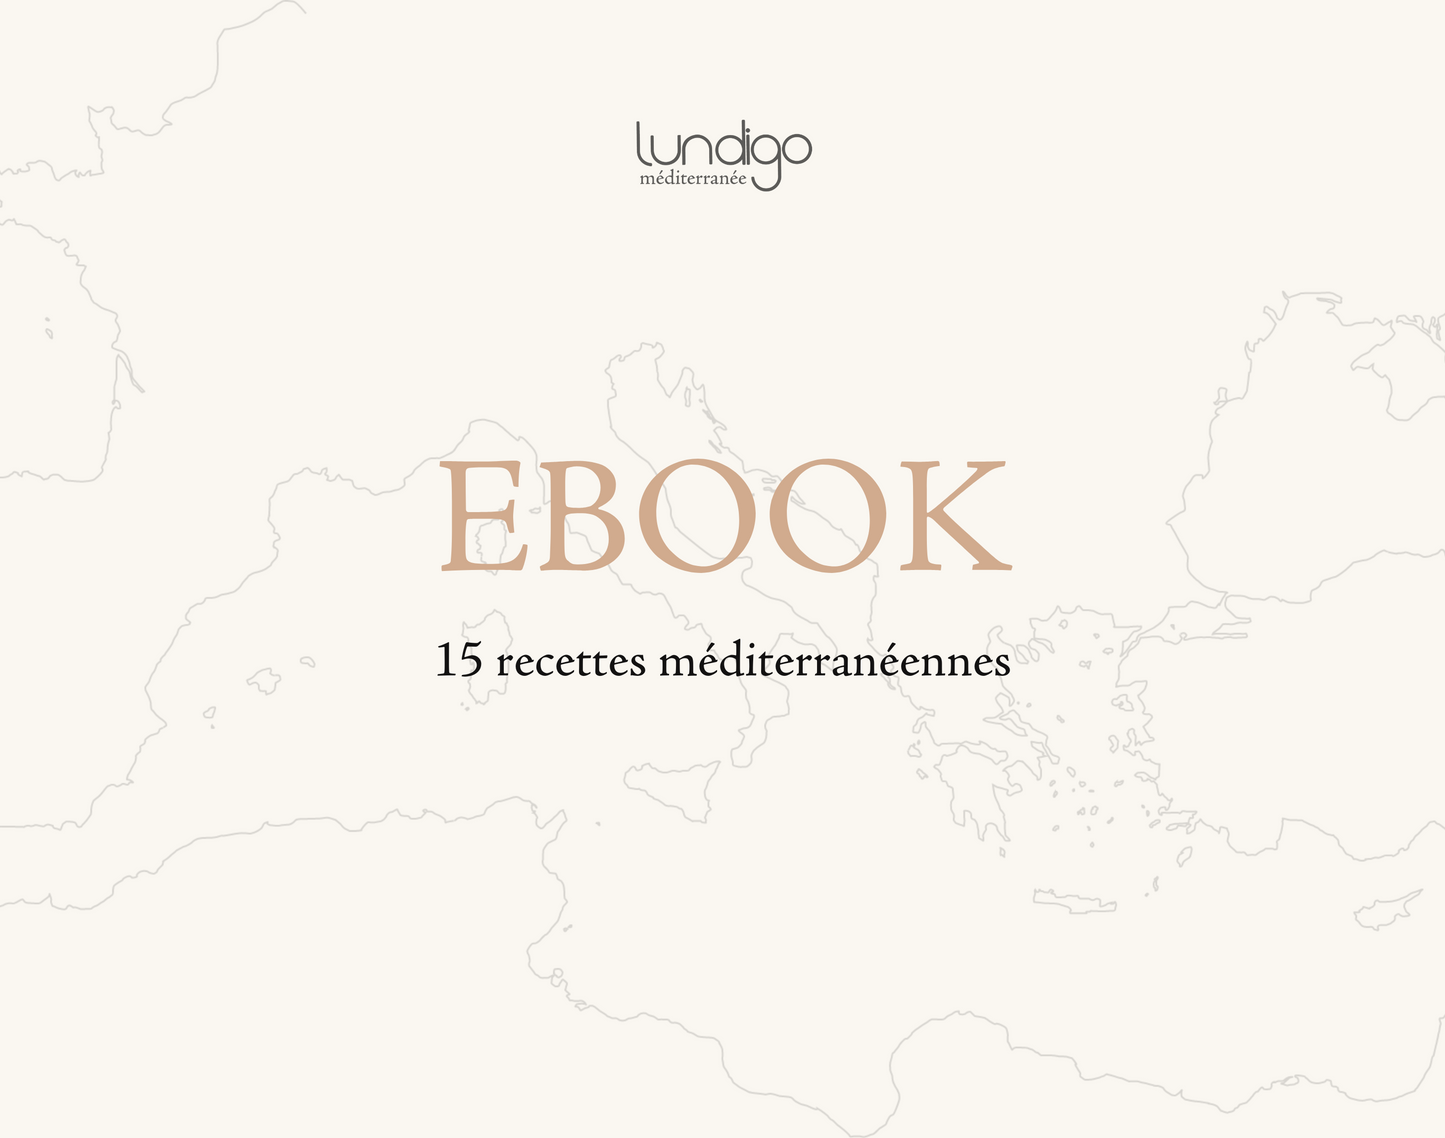 E-book 15 recettes diètes Méditerranéenne